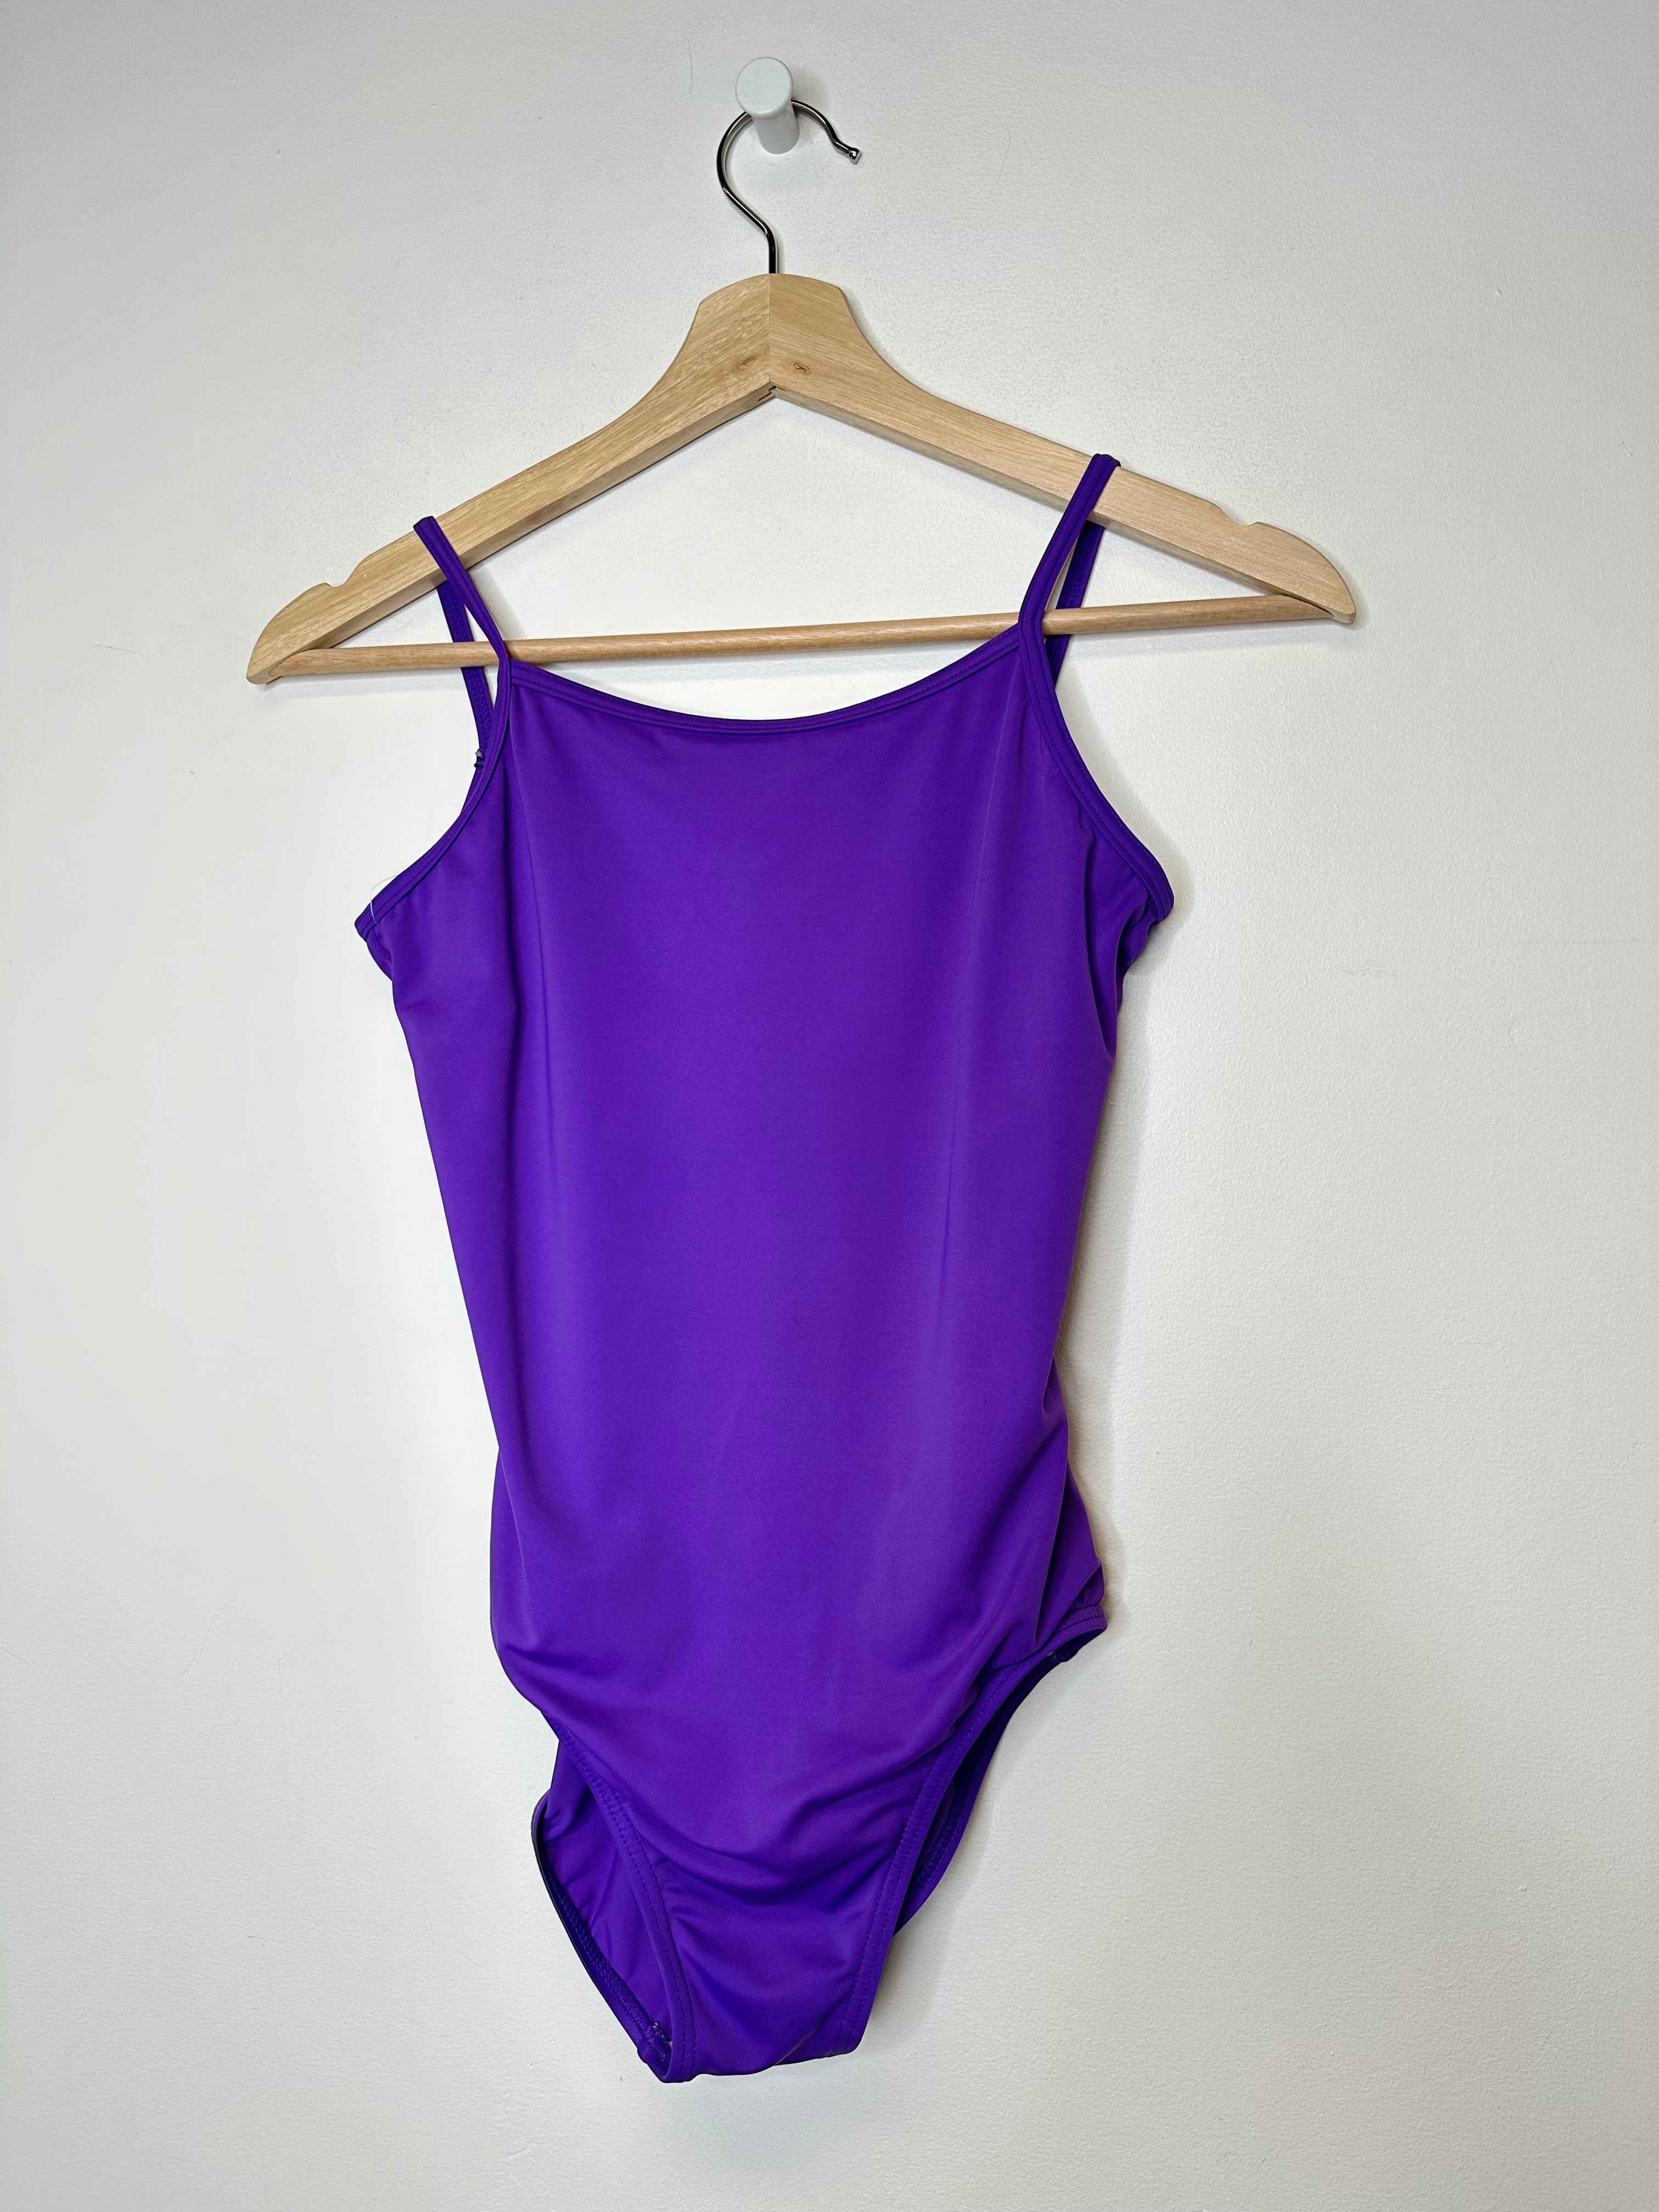 Vintage 80's Purple 1-Piece Bodysuit - S